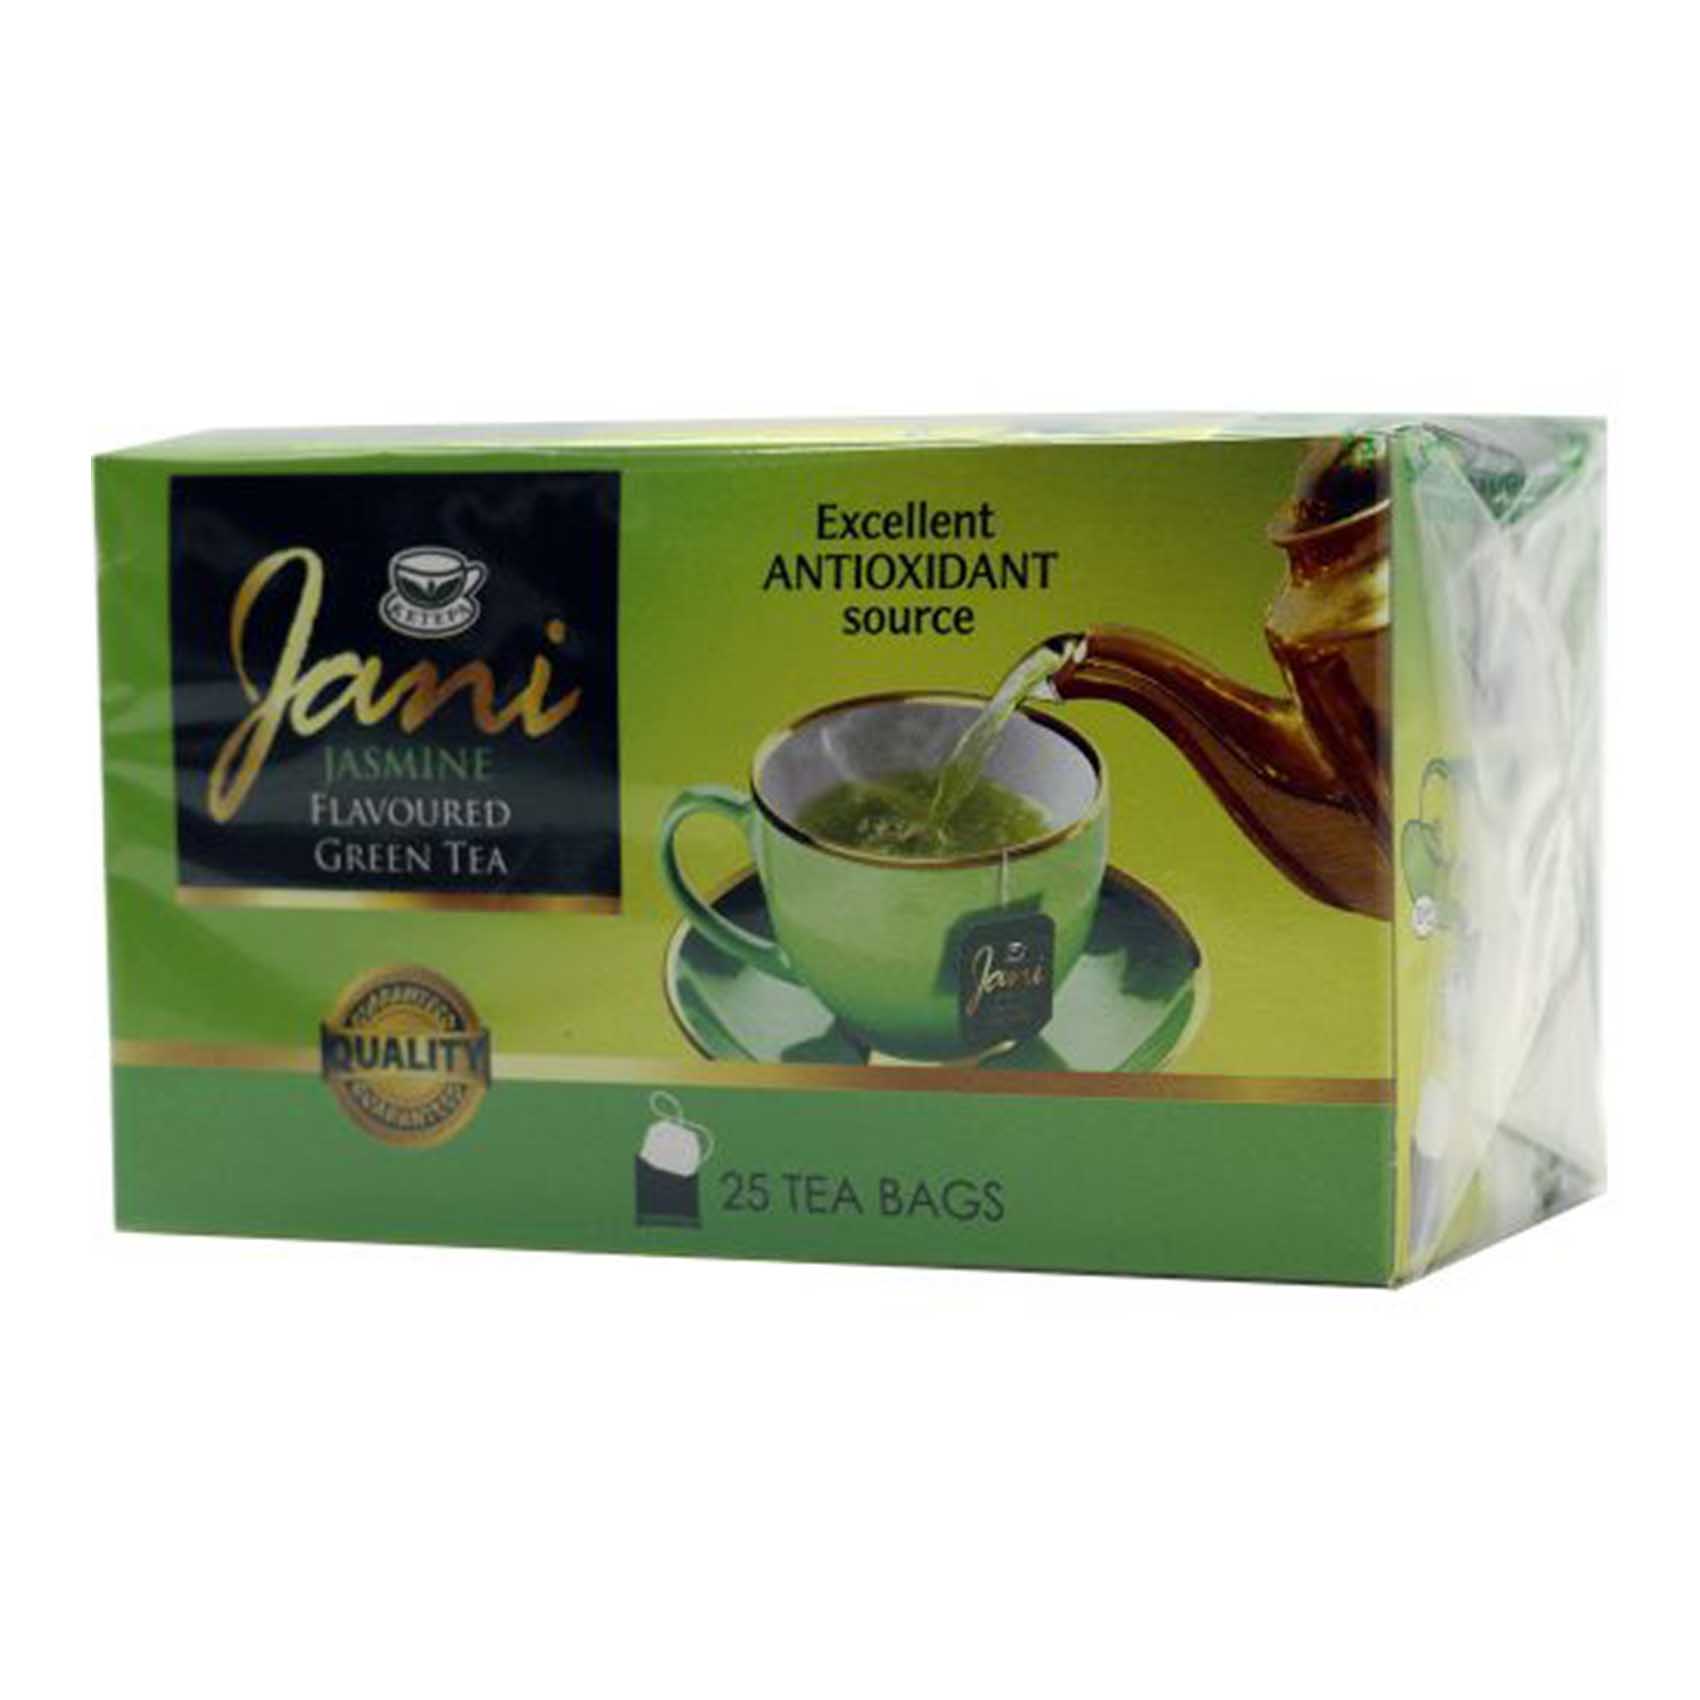 Ketepa Jani Jasmine Tea Bags 2g x Pack of 20